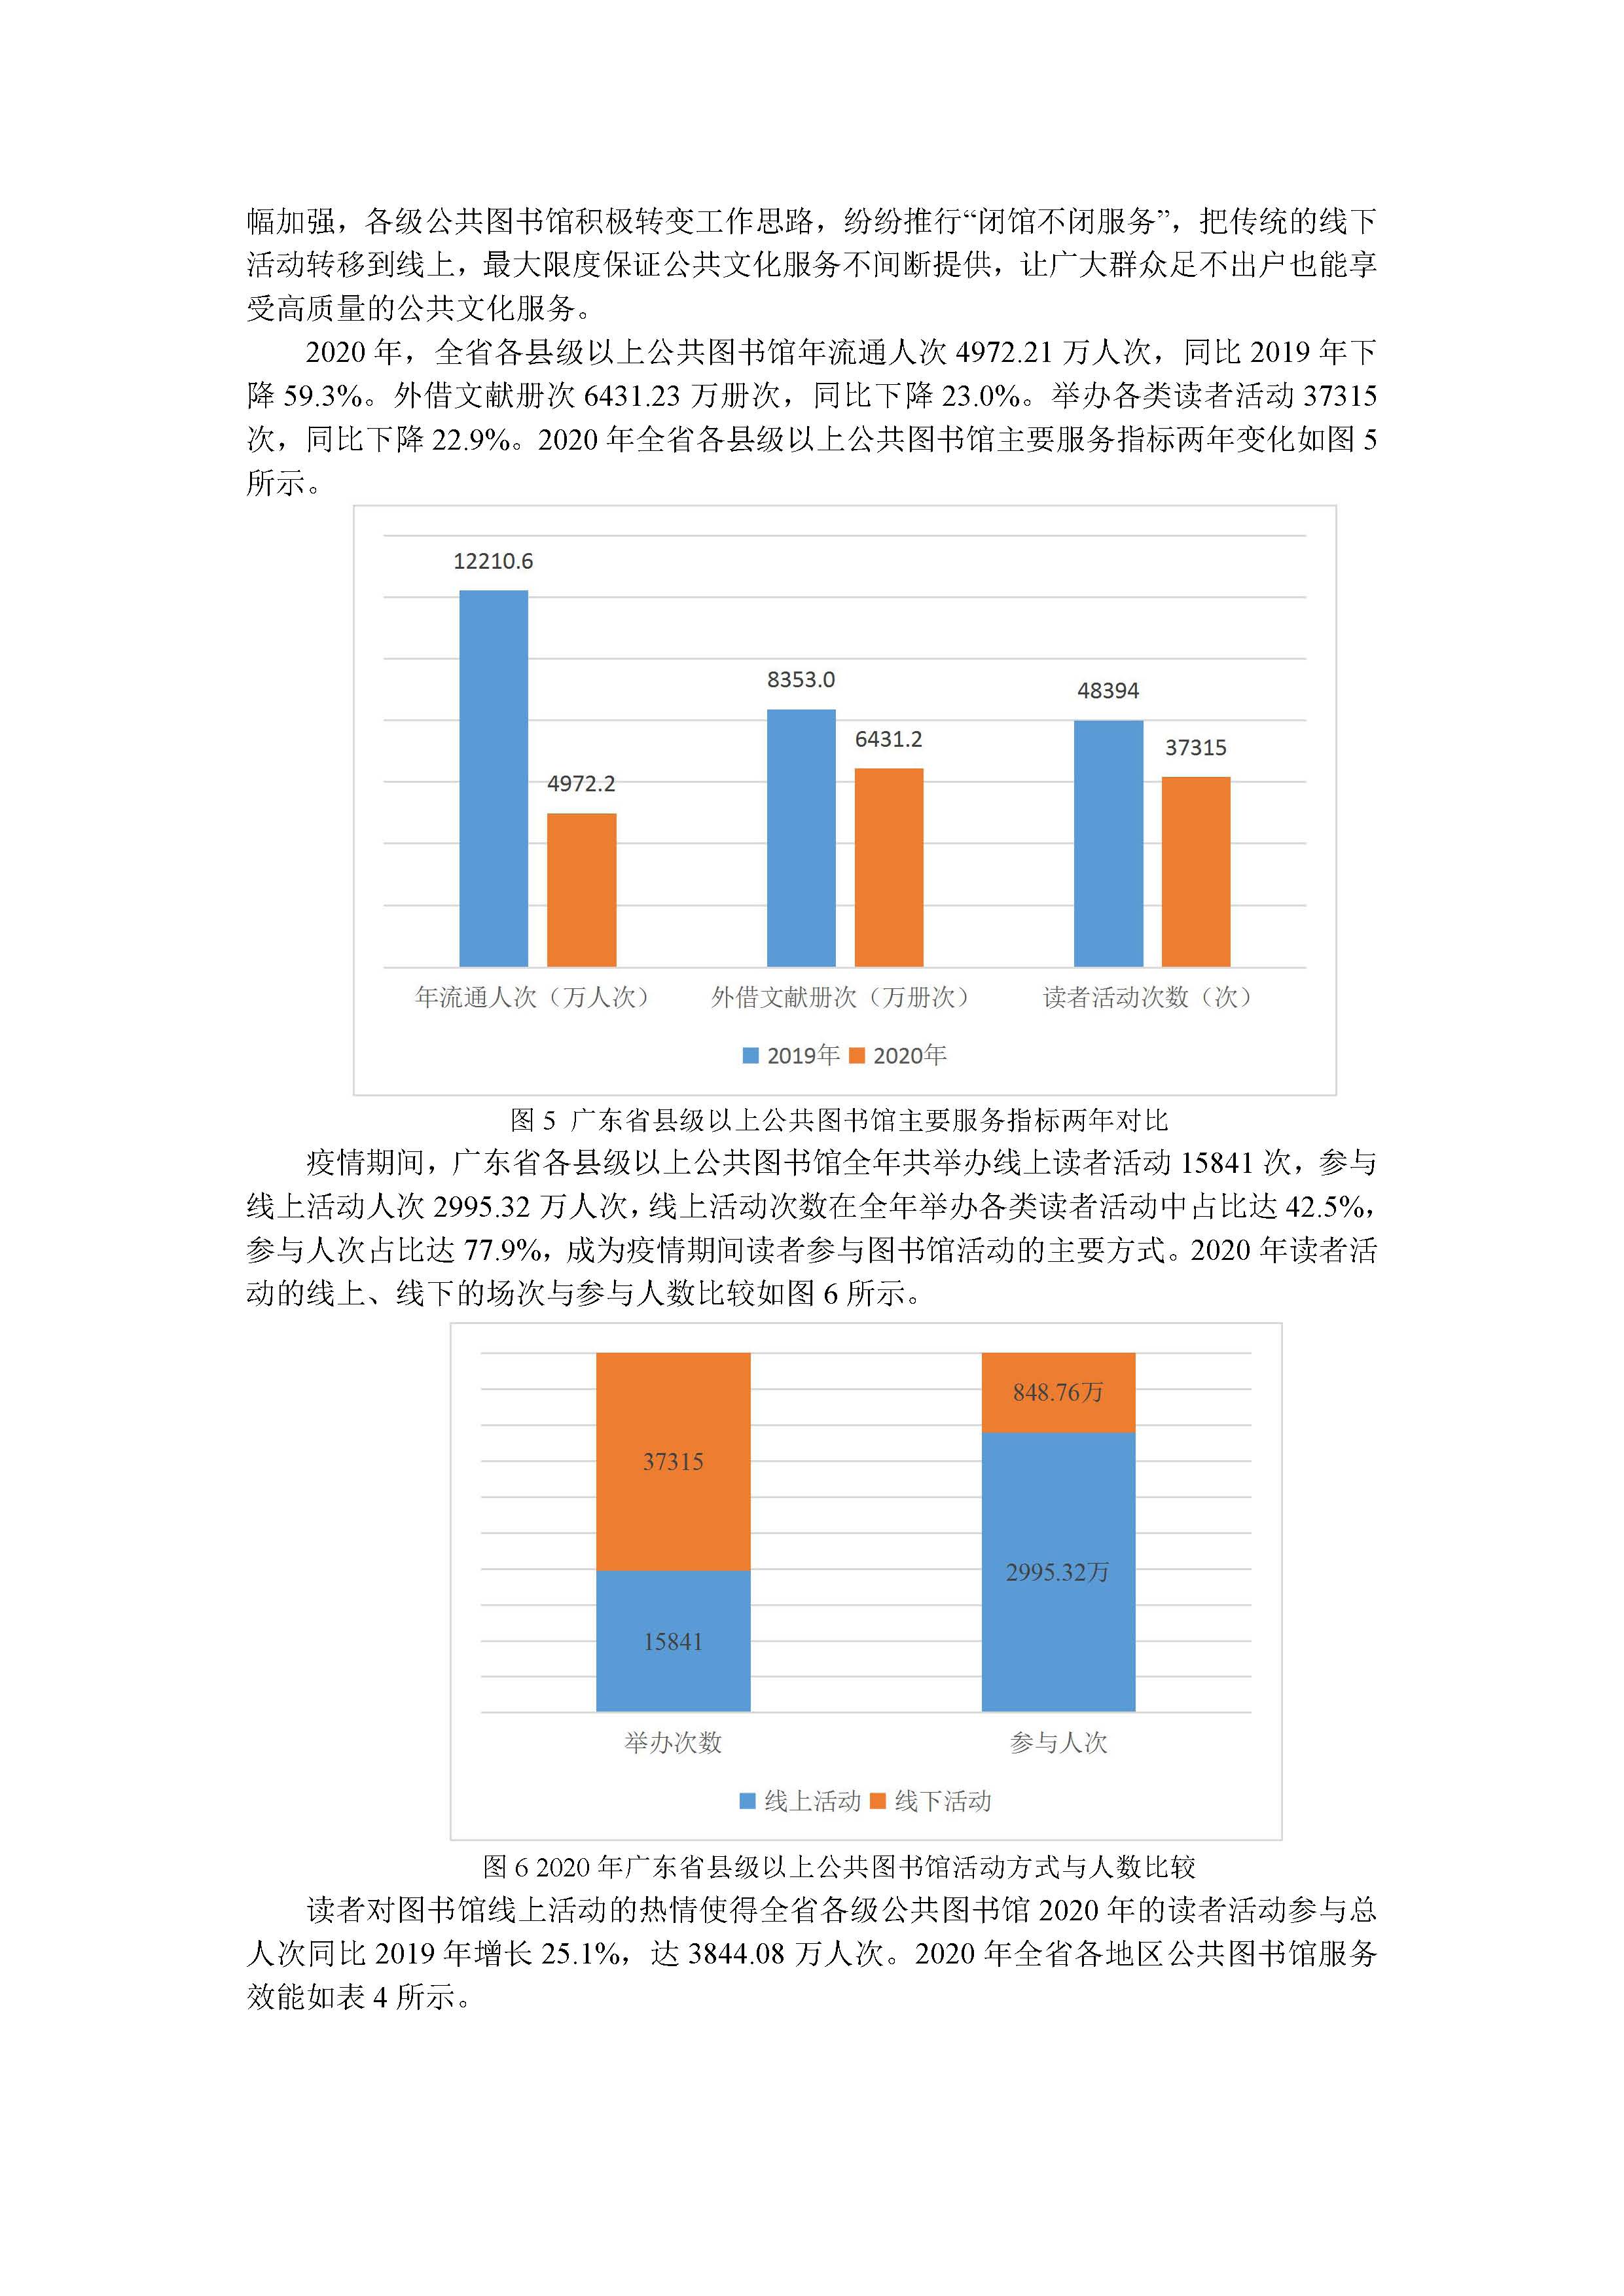 2020年广东省公共图书馆事业发展年度报告_页面_06.jpg